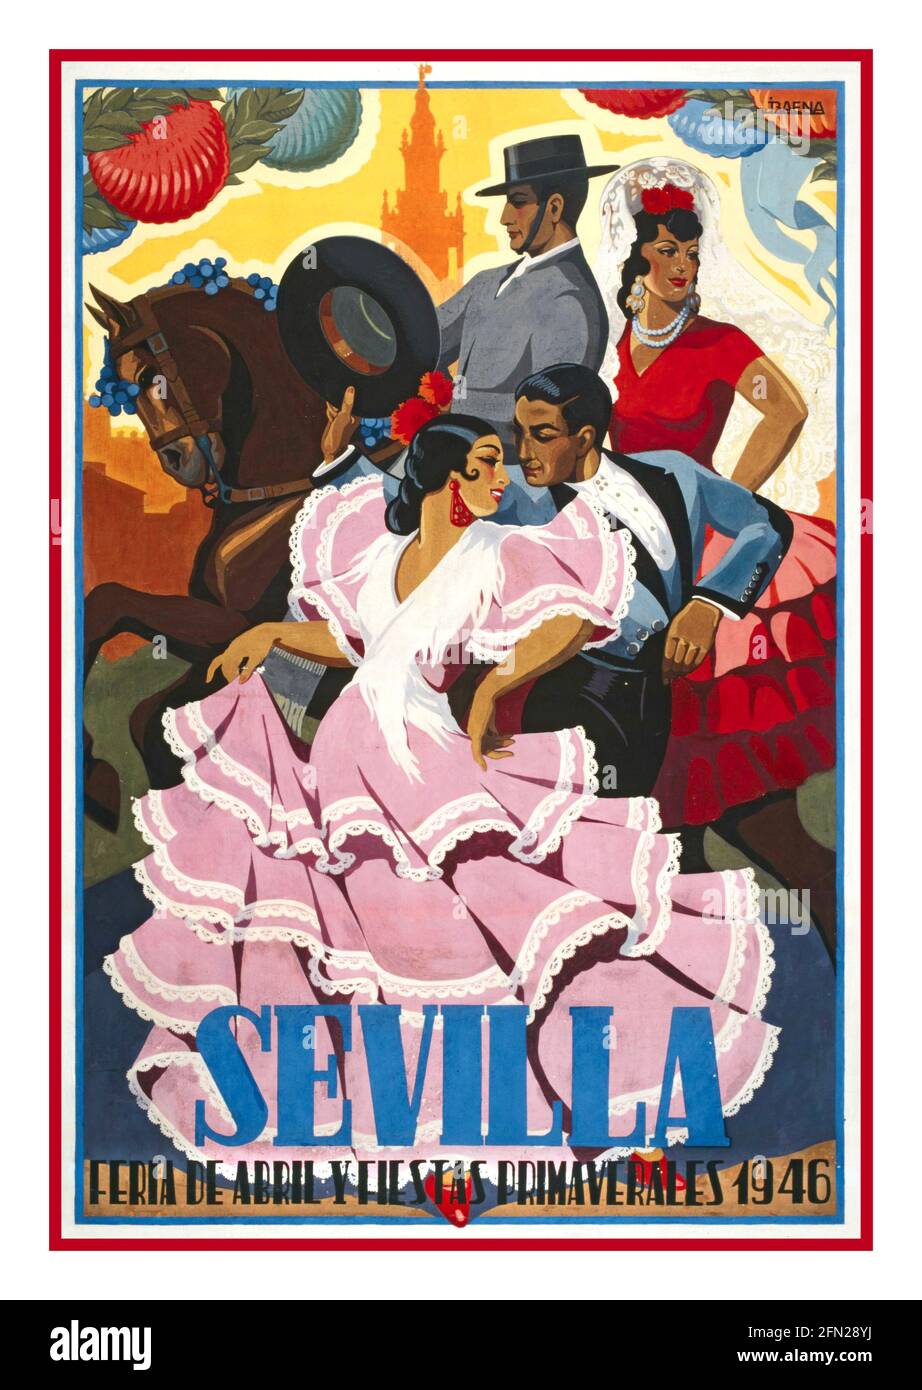 SEVILLA Vintage Spanish Travel Poster Spanien 1946 Sevilla April Fair Travel Poster Vintage 1946 Werbeplakat von J. Baena kündigt die jährliche Sevilla April Fair Fiesta an, die jedes Jahr in der andalusischen Hauptstadt Spanien stattfindet Stockfoto